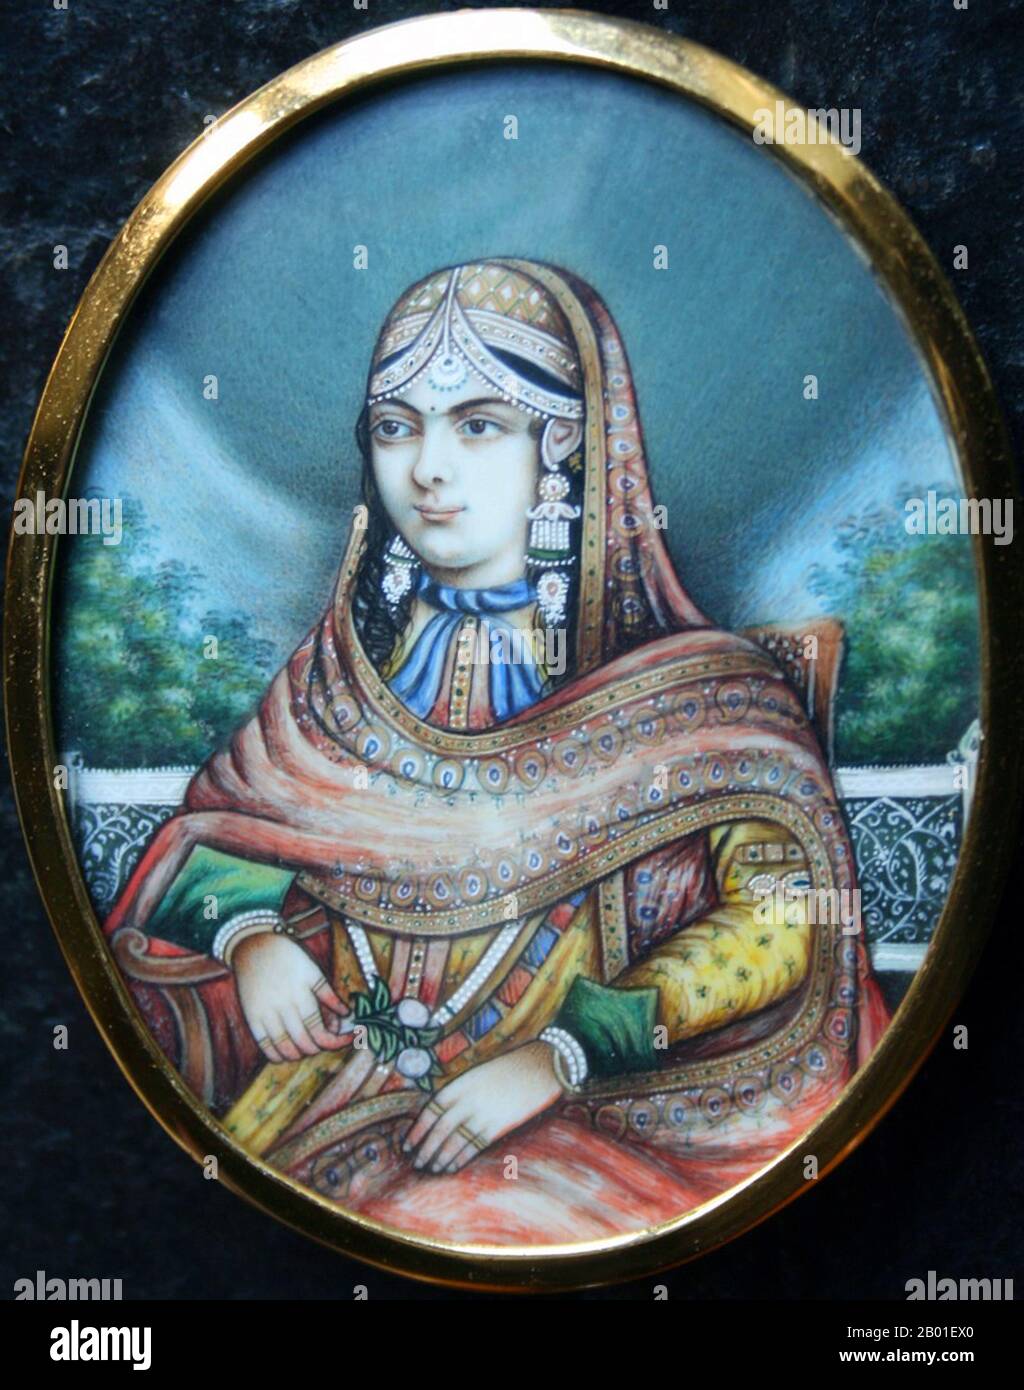 India: L'imperatrice Jodhabai (1542 - 19 maggio 1623), moglie dell'imperatore Mughal Akbar del 3rd (25 ottobre 1542 - 27 ottobre 1605). Ritratto postumo, c. 1850. Mariam uz-Zamani Begum Sahiba (Principessa Imperiale), nata Rajkumari (Principessa) Hira Kunwari, alias Harkha Bai era una principessa Rajput che divenne l'imperatrice Mughal, dopo il suo matrimonio con l'imperatore Mughal Akbar. Era la figlia più grande di Kachwaha Rajput, Raja Bharmal di Amber, il nome più vecchio dello stato di Rajput di Jaipur. La sua notabilità deriva dal suo matrimonio con l'imperatore Mughal Jalaluddin Muhammad Akbar. Foto Stock